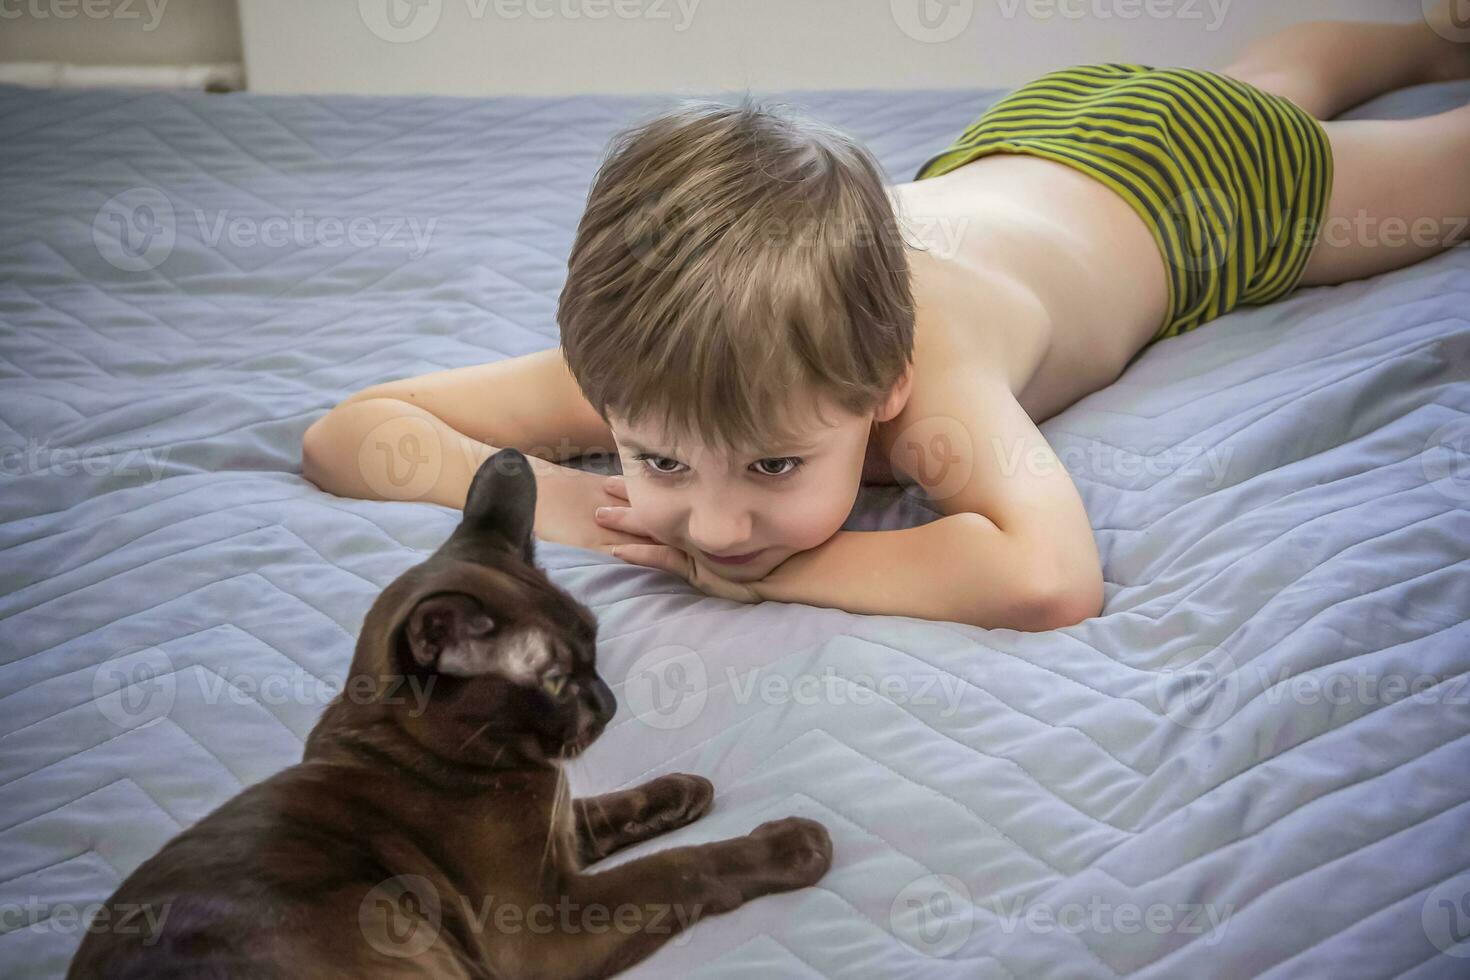 linda chico sin un camiseta. un rubio chico es acostado en el cama en un natural configuración, y un gato es siguiente a a él. el cara expresa natural emociones foto